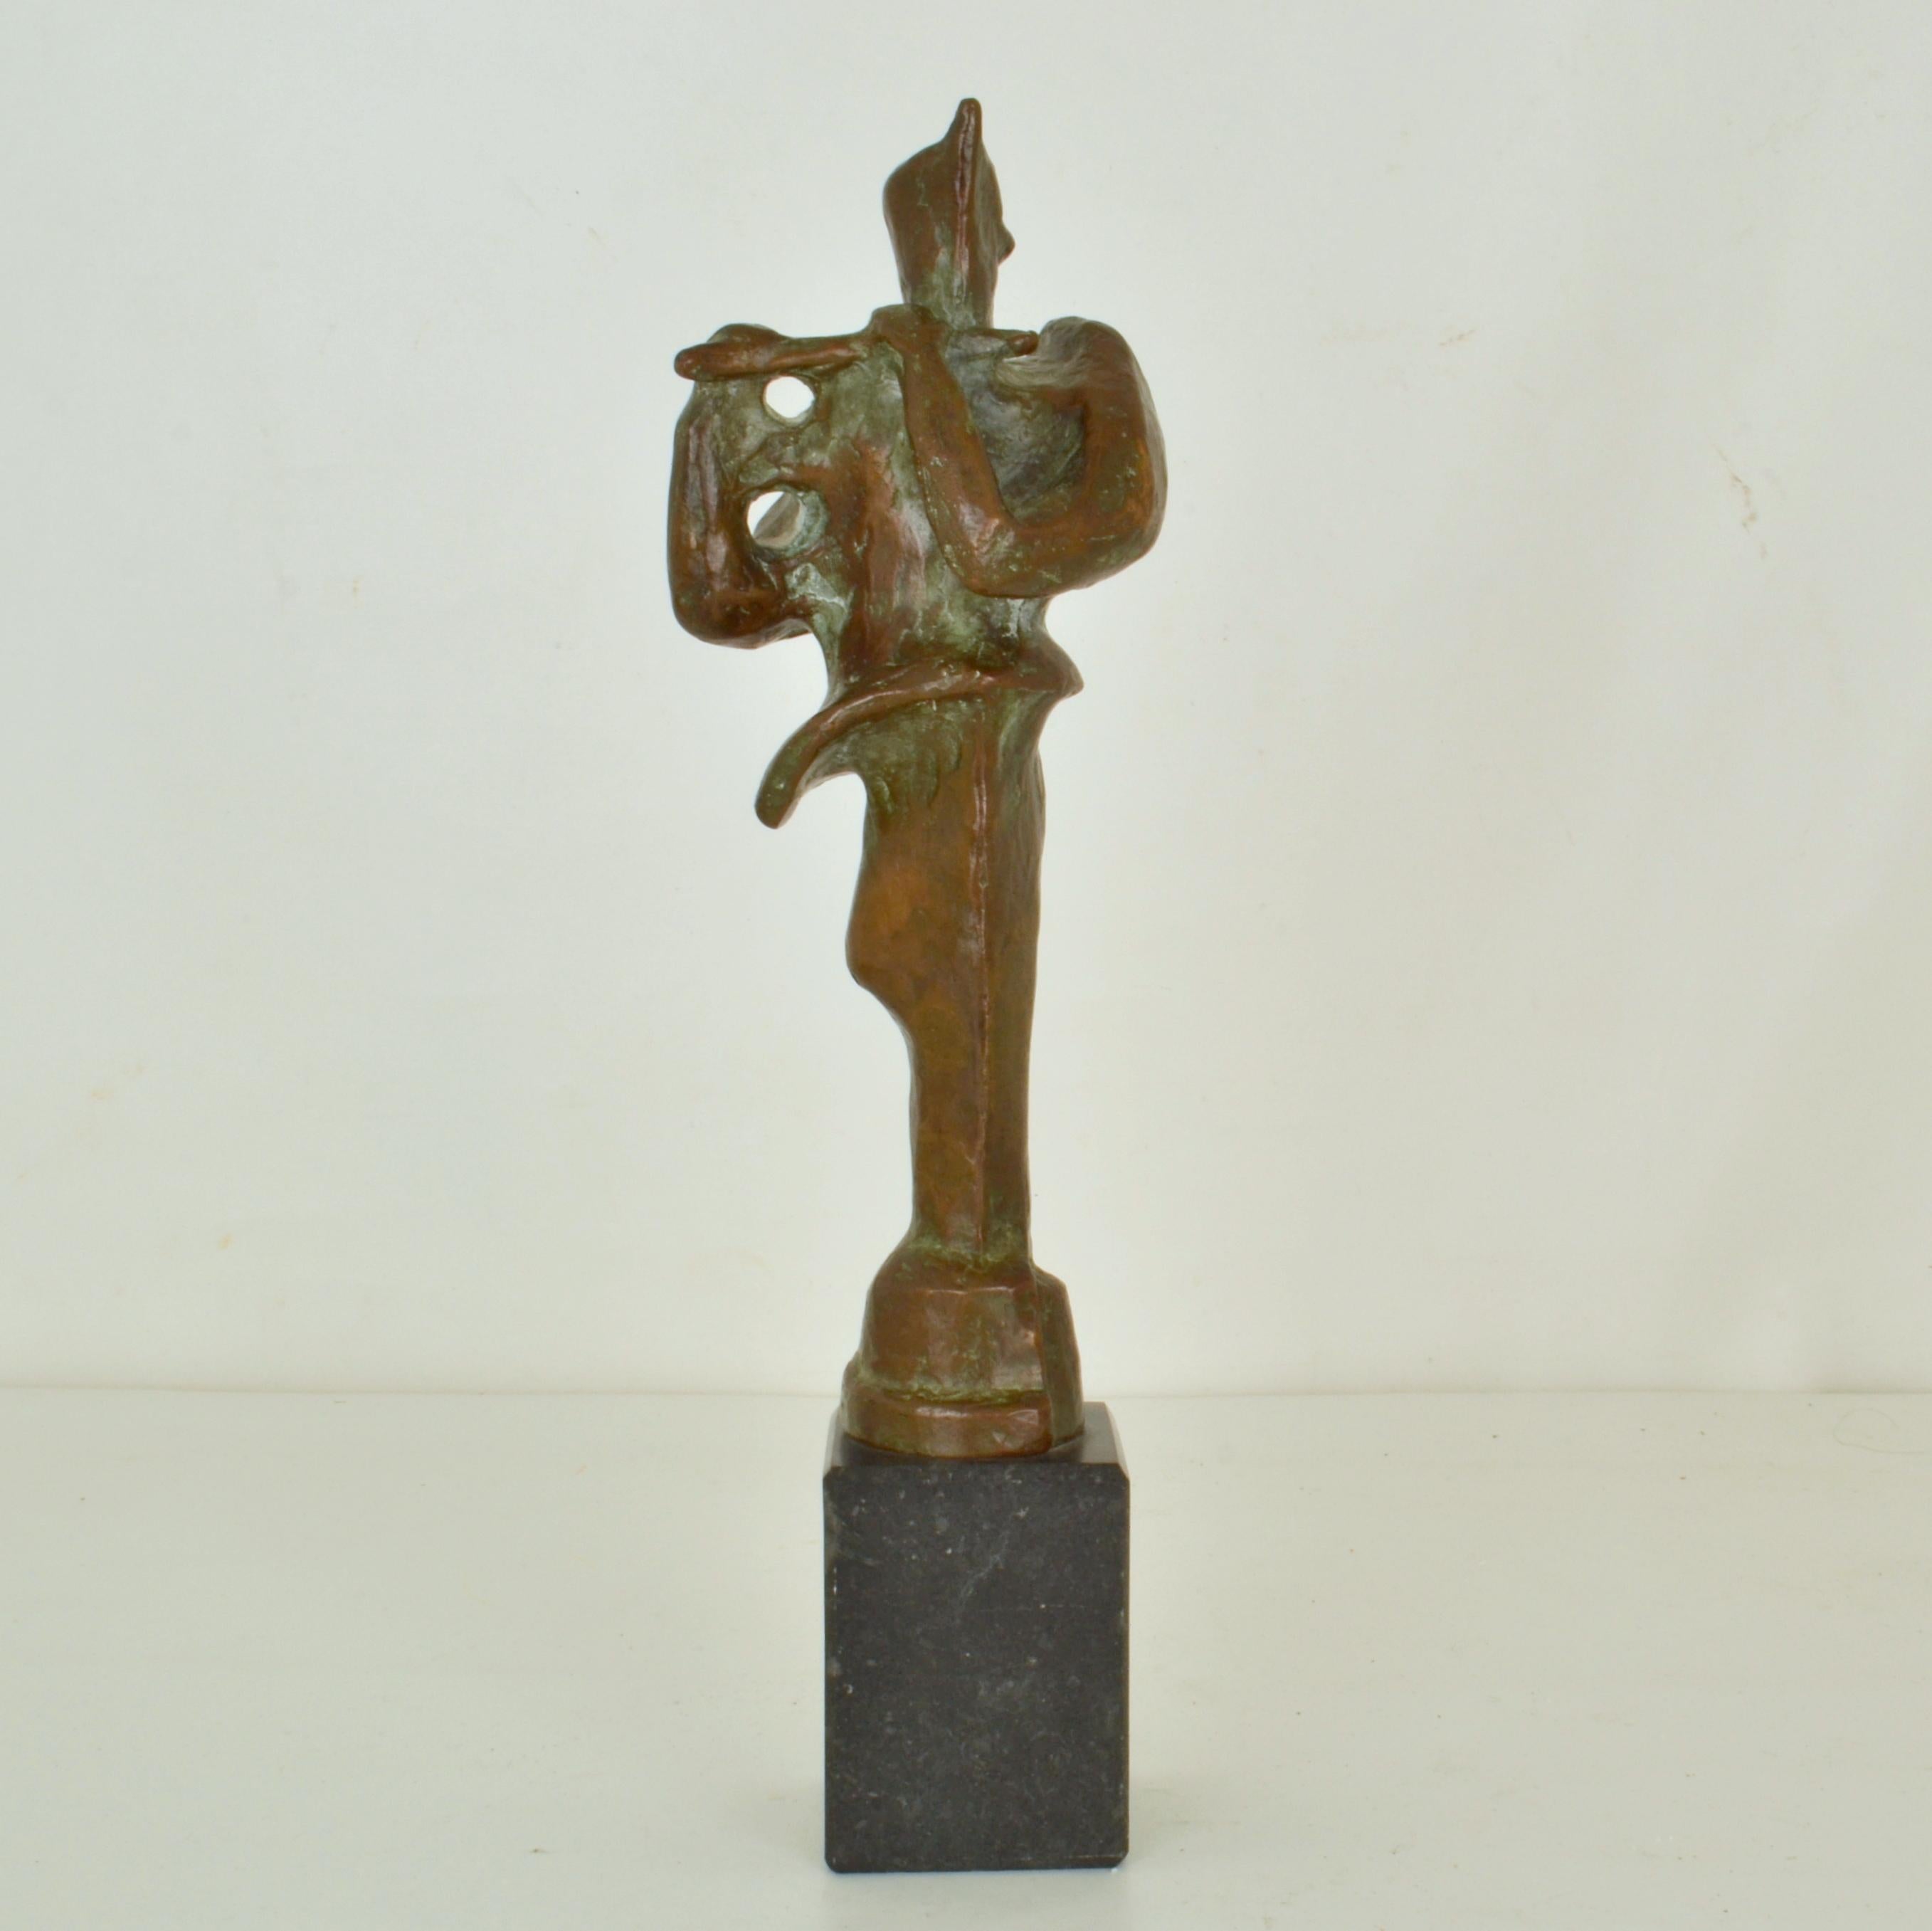 Sculpture d'un joueur de flûte en bronze sur un socle en marbre noir, réalisée par Adler dans les années 1960. Il est expressif avec sa patine d'origine et fera un bel objet. 
Il existe de nombreuses histoires mythologiques impliquant le joueur de